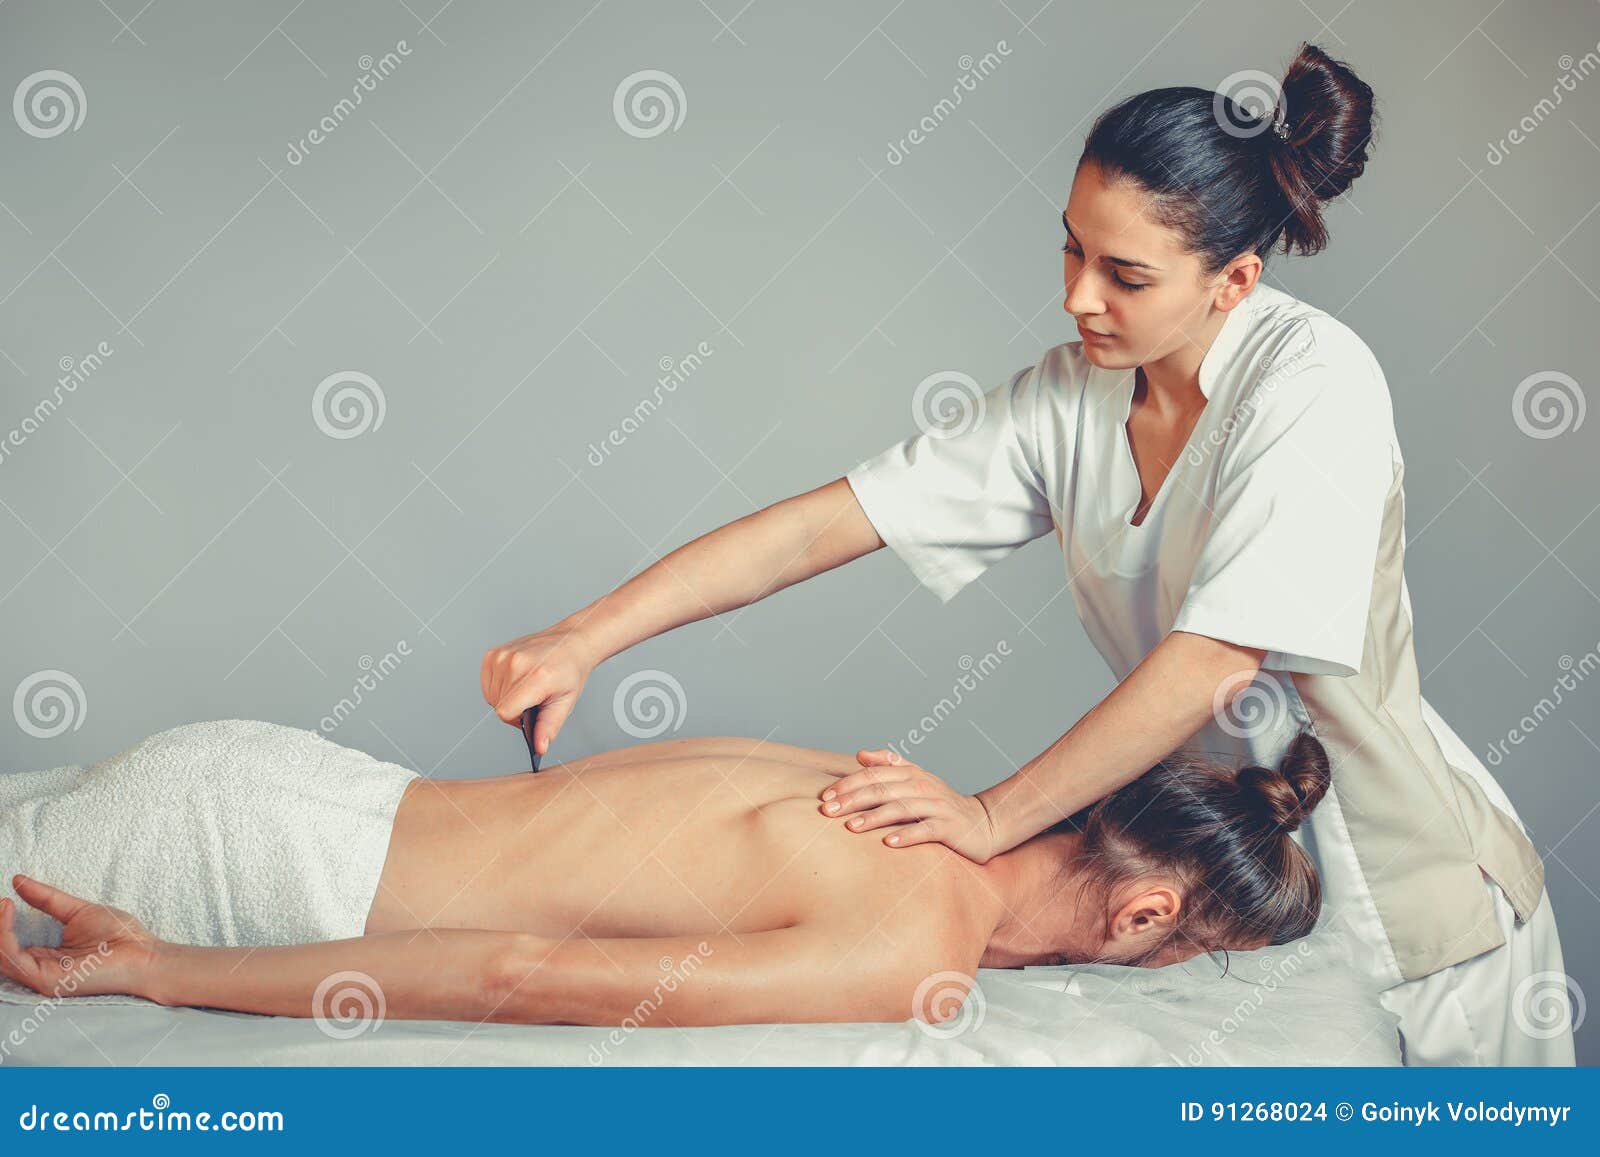 massage gua, sha therapy